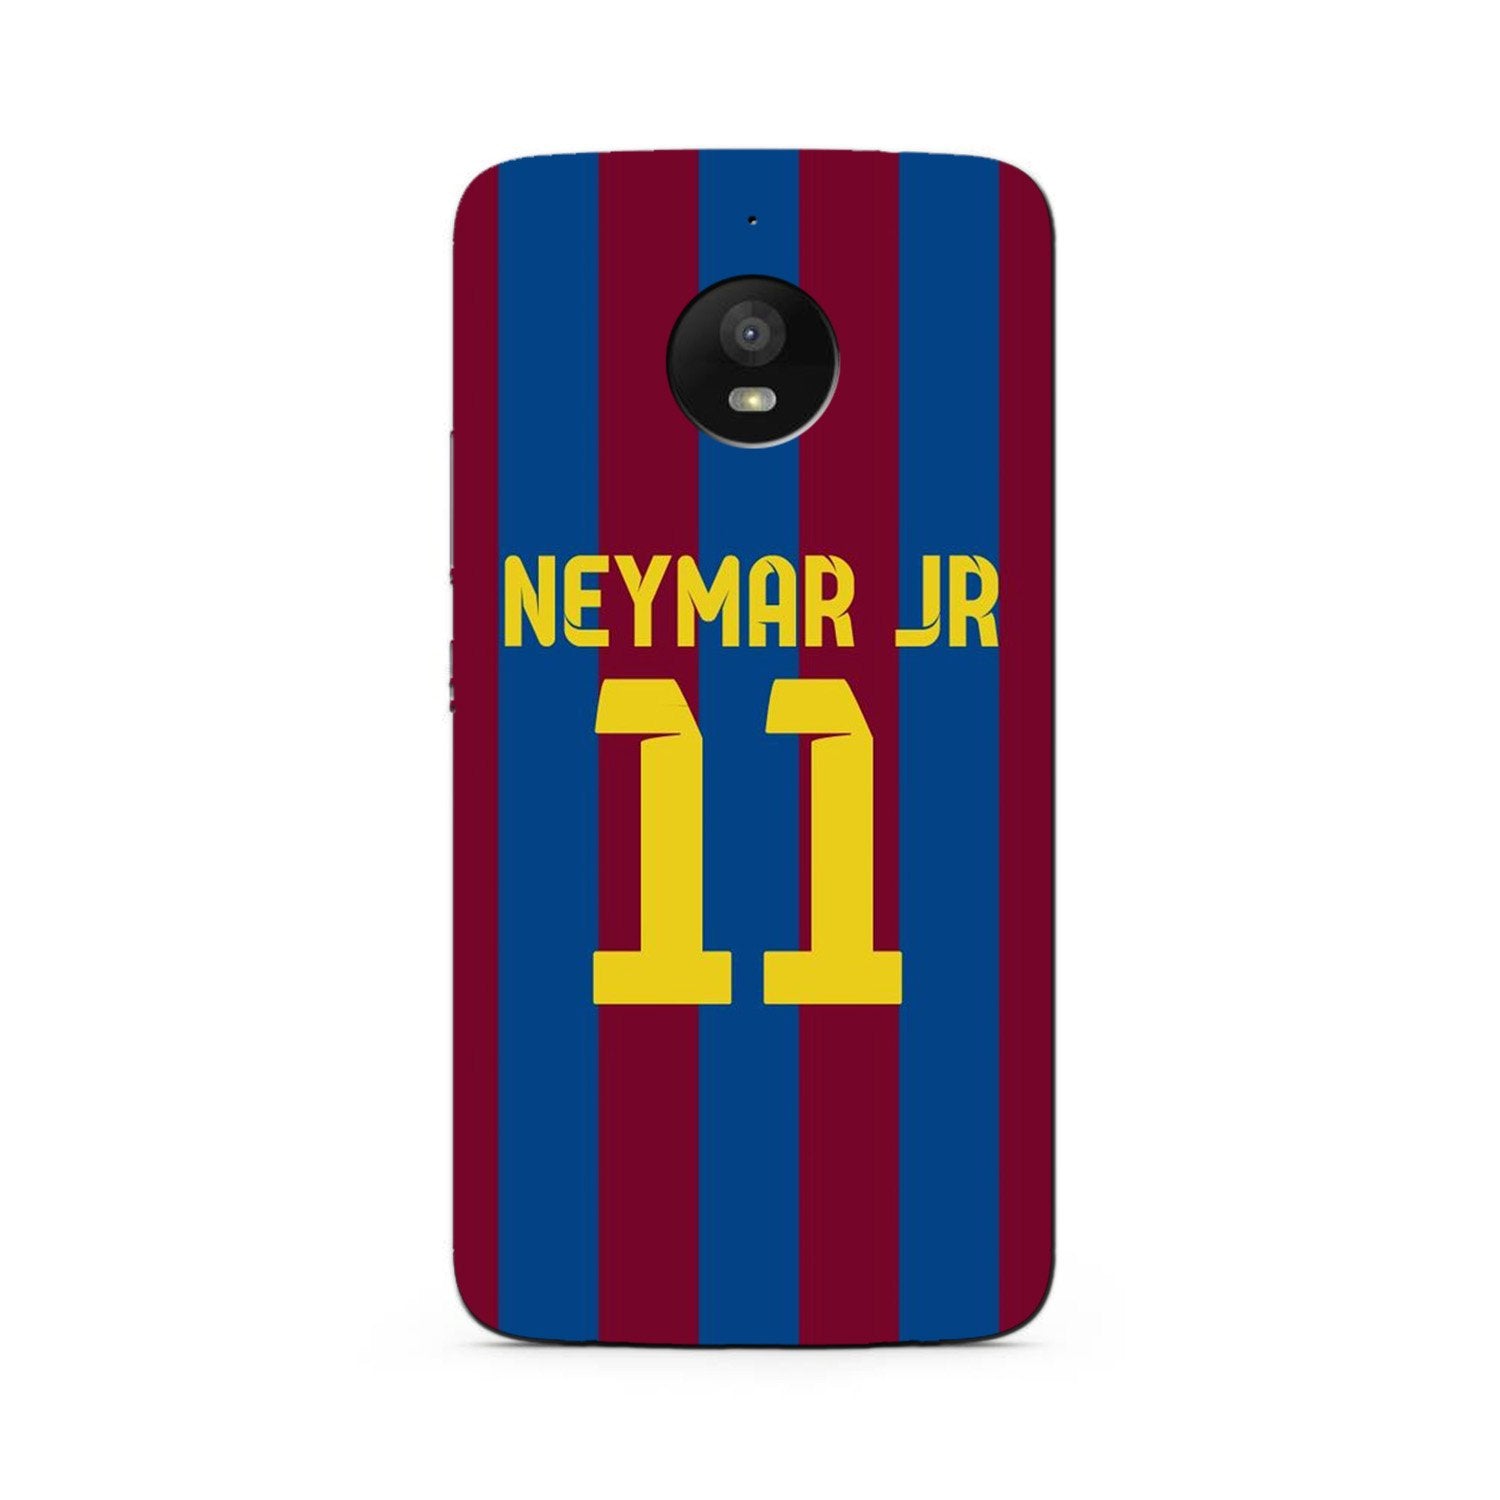 Neymar Jr Case for Moto G5s(Design - 162)